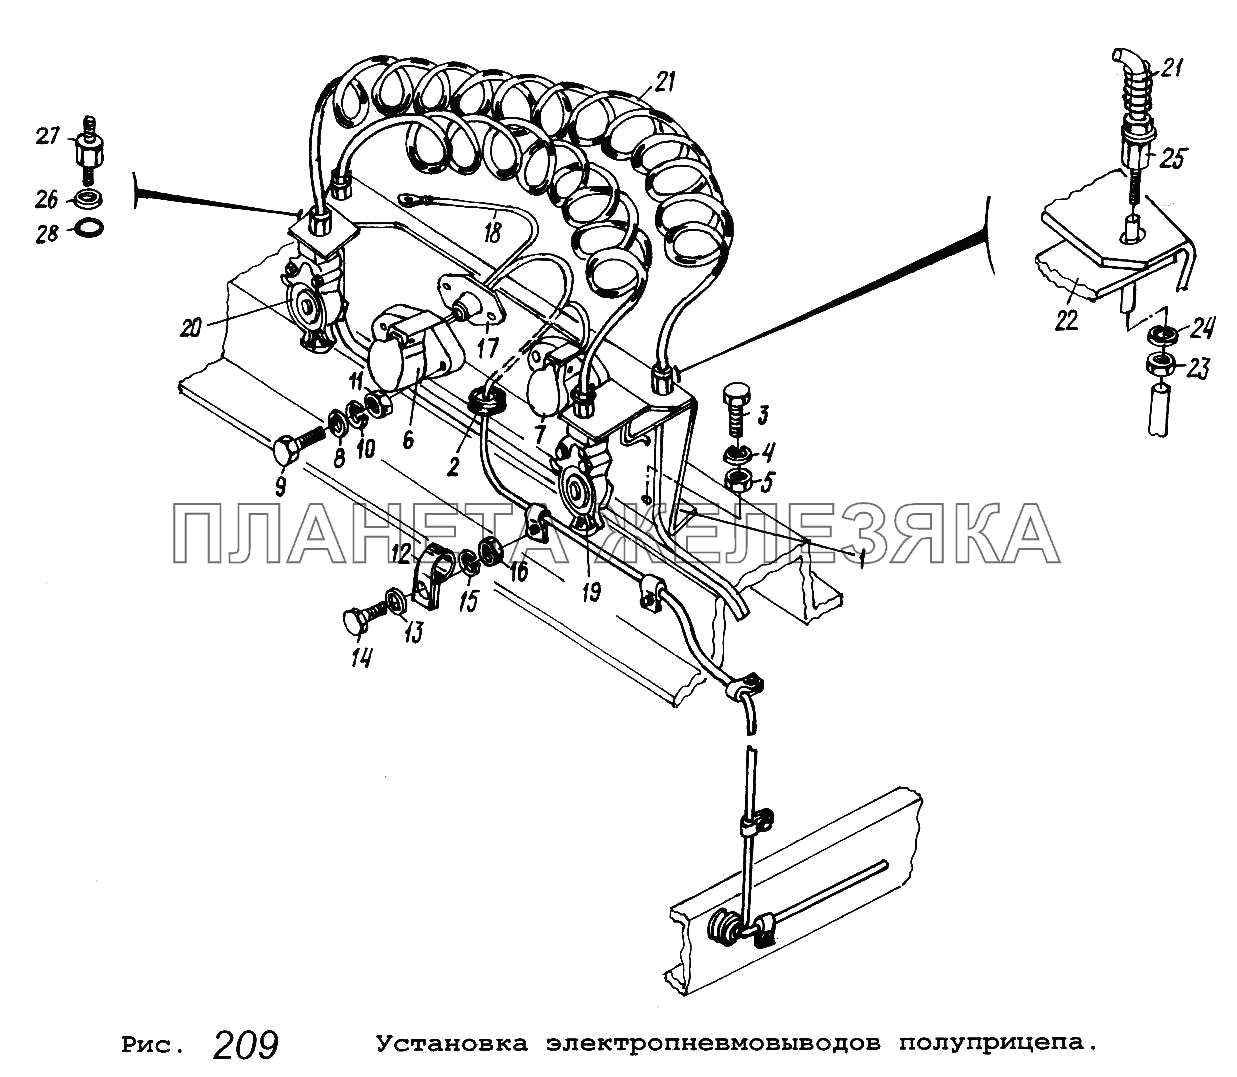 Установка электропневмовыводов полуприцепа МАЗ-54323